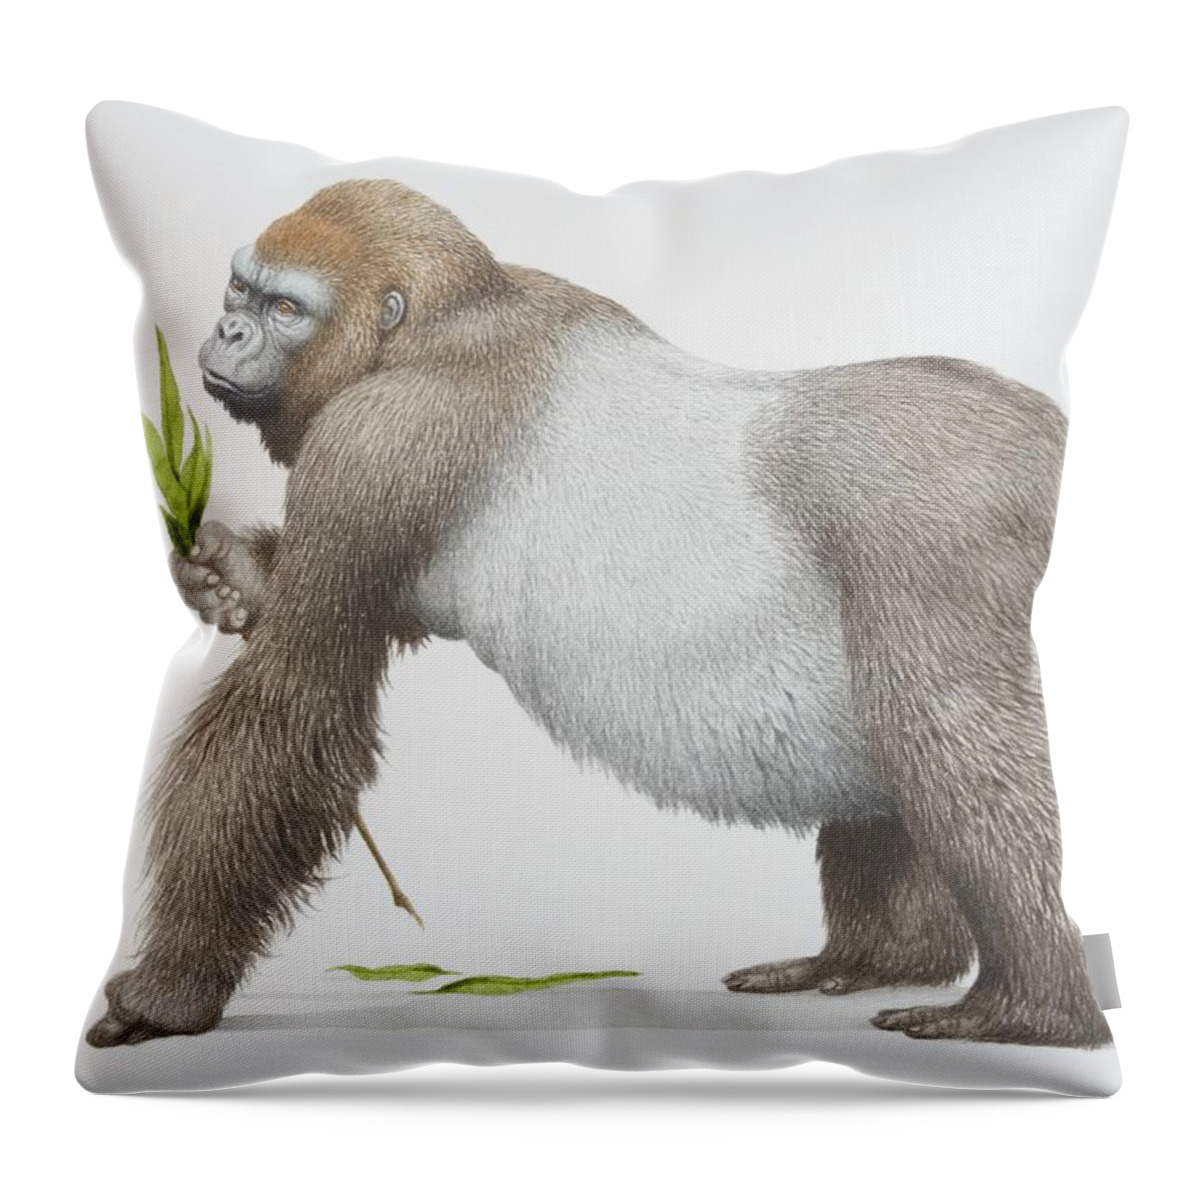 Gorilla Gorilla Gorilla, Western Throw Pillow by Kenneth Lilly 